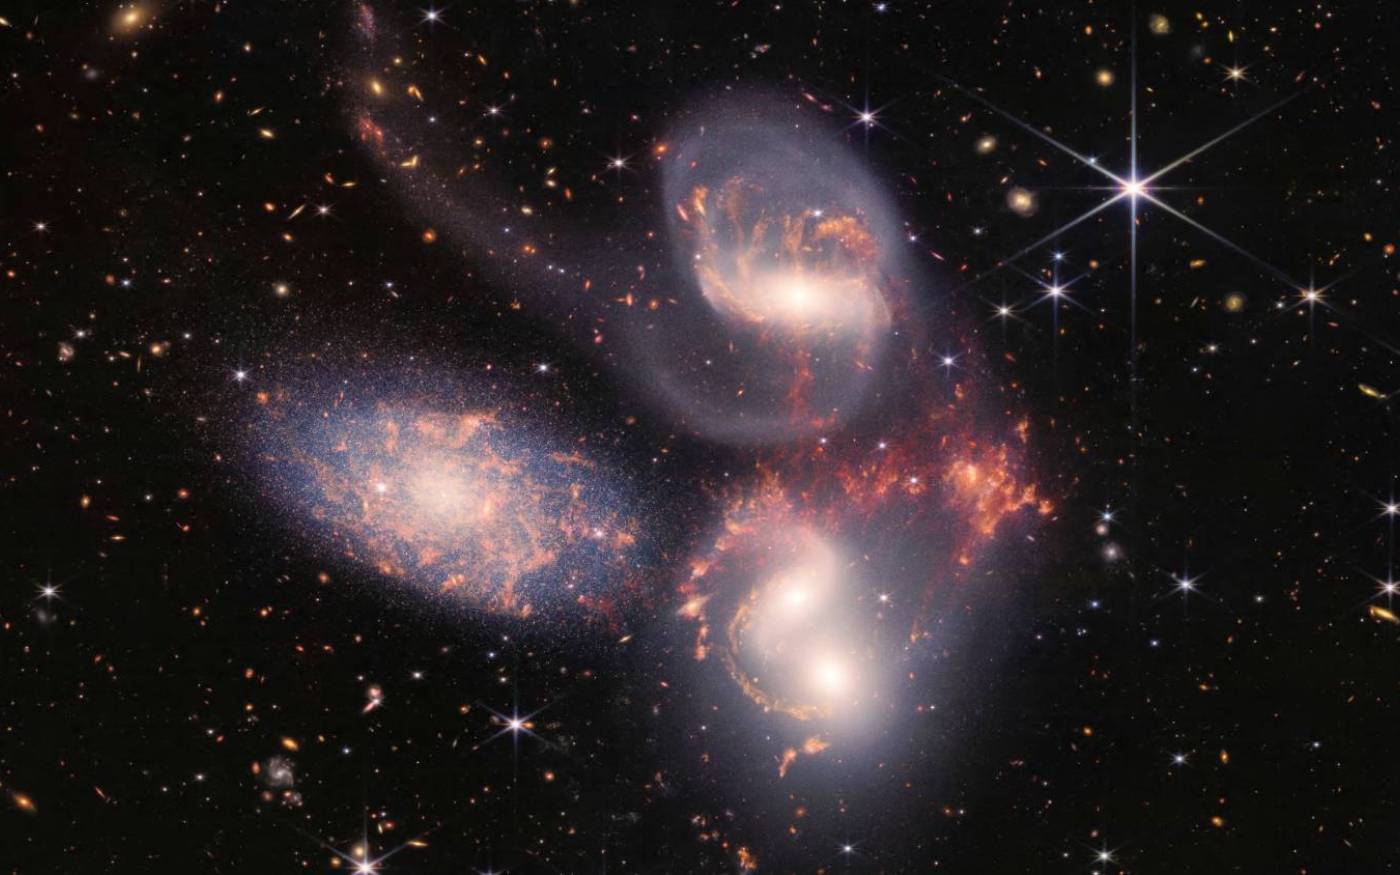 Image du Quintette de Stephan, un groupement de cinq galaxies, prise par le télescope spatial James-Webb de la NASA (NASA/AFP)